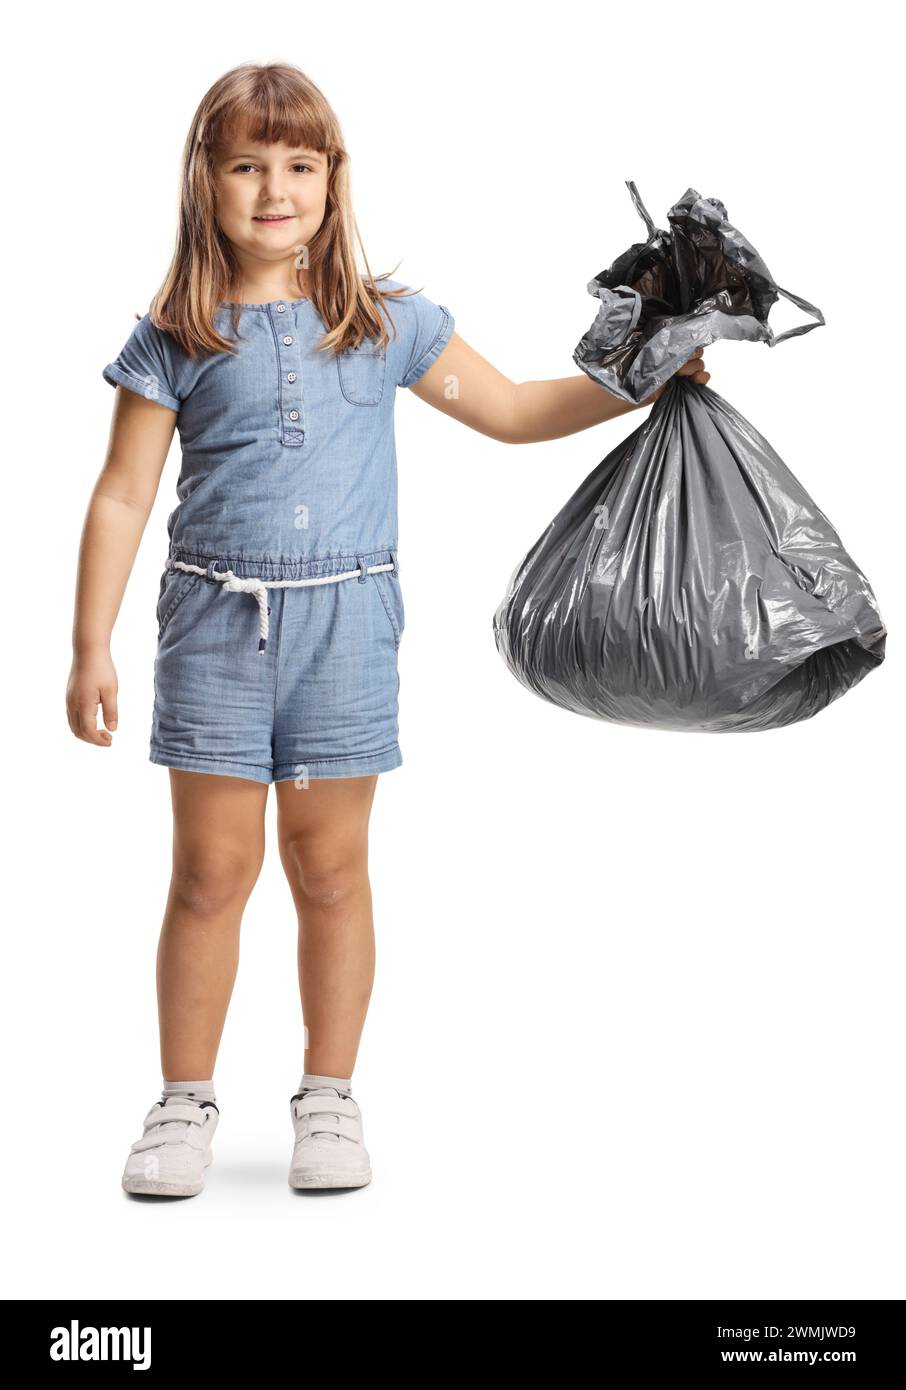 Petite fille tenant un sac poubelle en plastique isolé sur fond blanc Banque D'Images